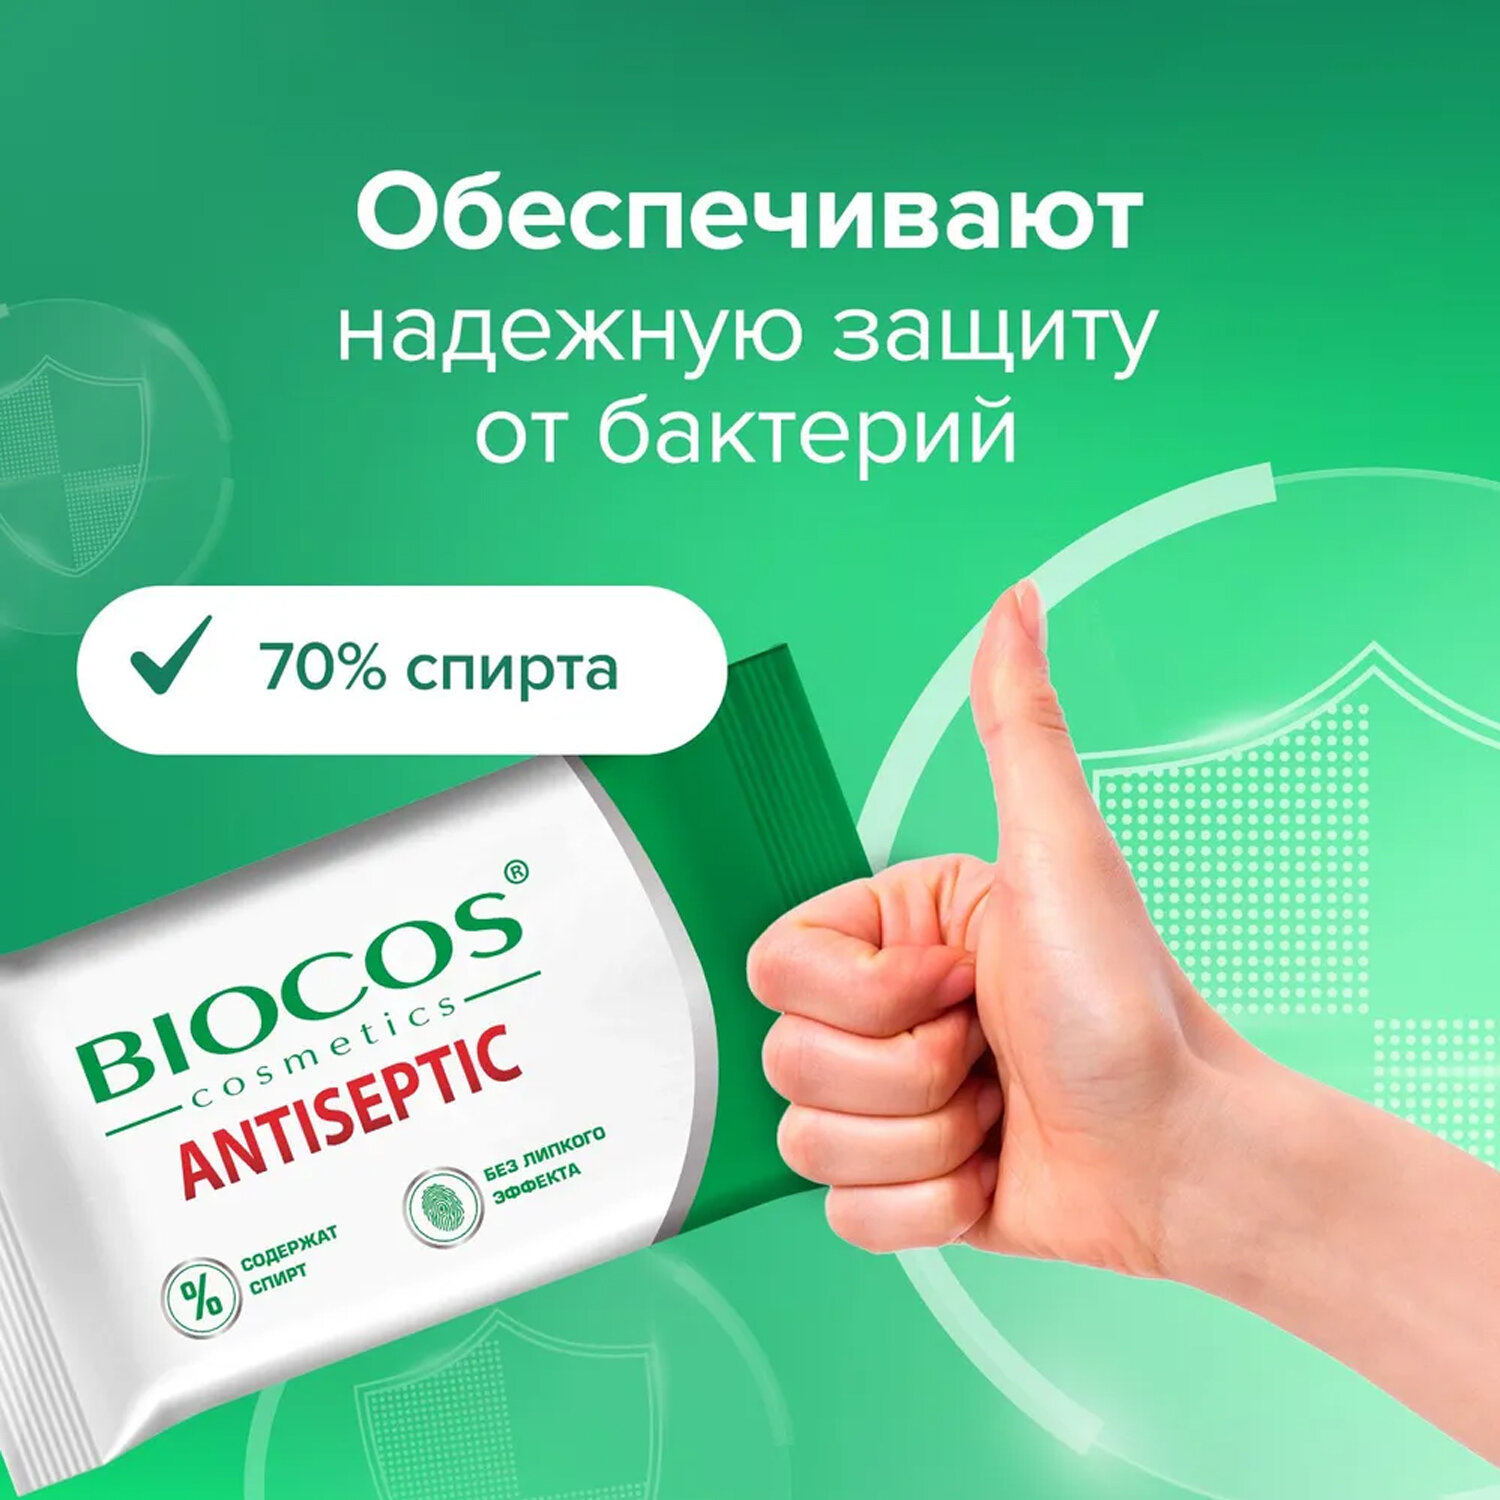 Влажные салфетки Biocos Antiseptic антисептические для гигиены рук, набор 60 штук